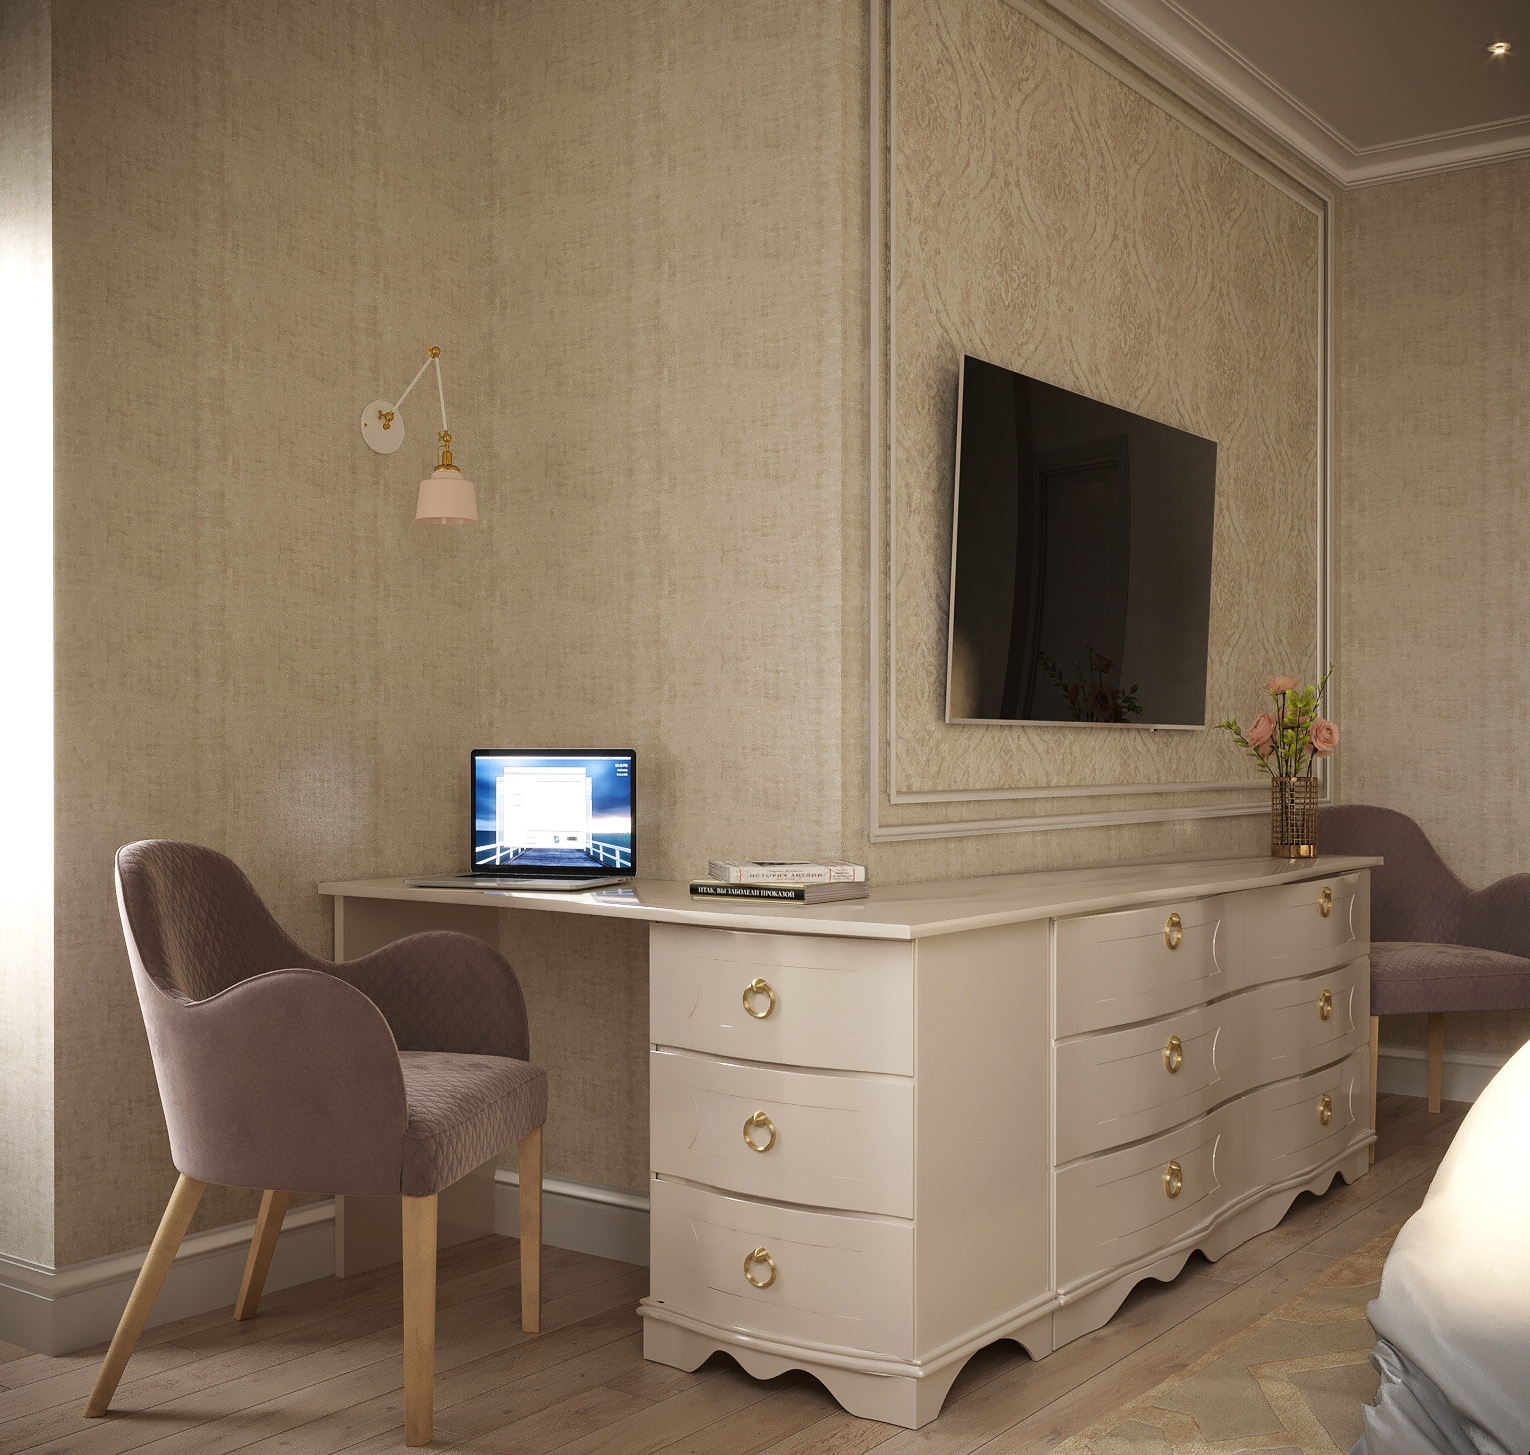 Chambre de style classique dans 3d max corona render image